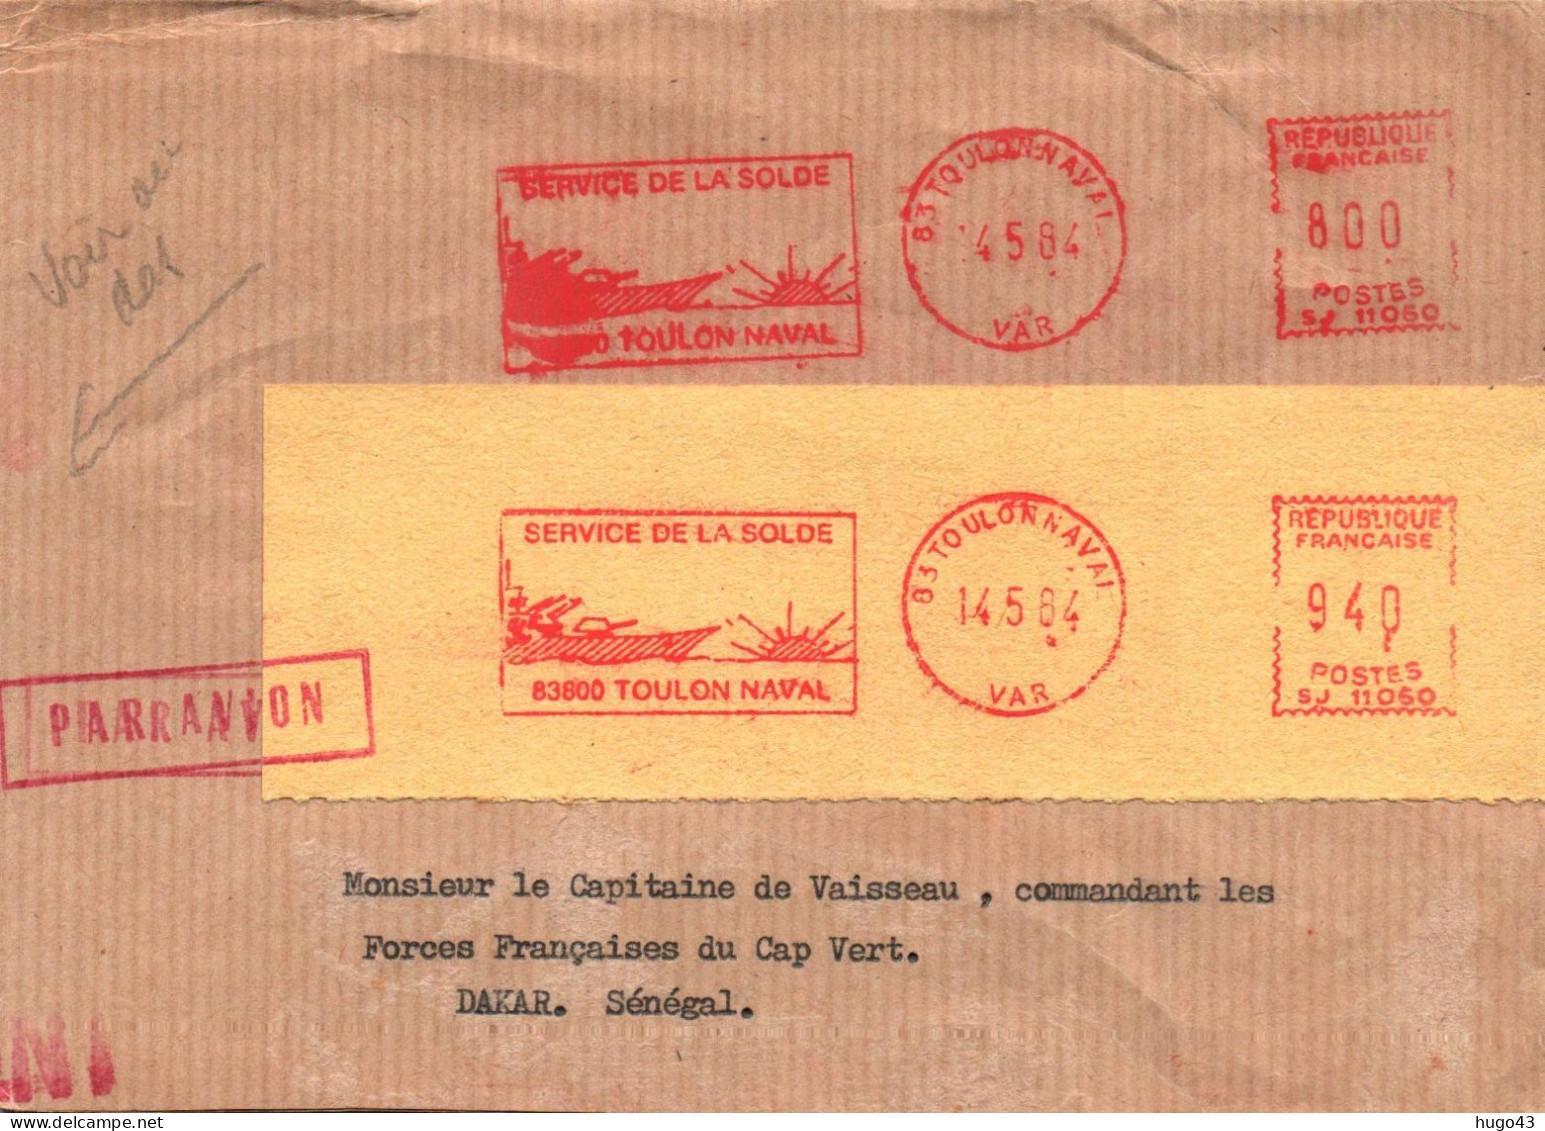 ENVELOPPE  AVEC FLAMME E.M.A - TOULON NAVAL - LE 15/05/1984 - SERVICE DE LA SOLDE - CACHET DAKAR UNITE MARINE AU DOS - Seepost